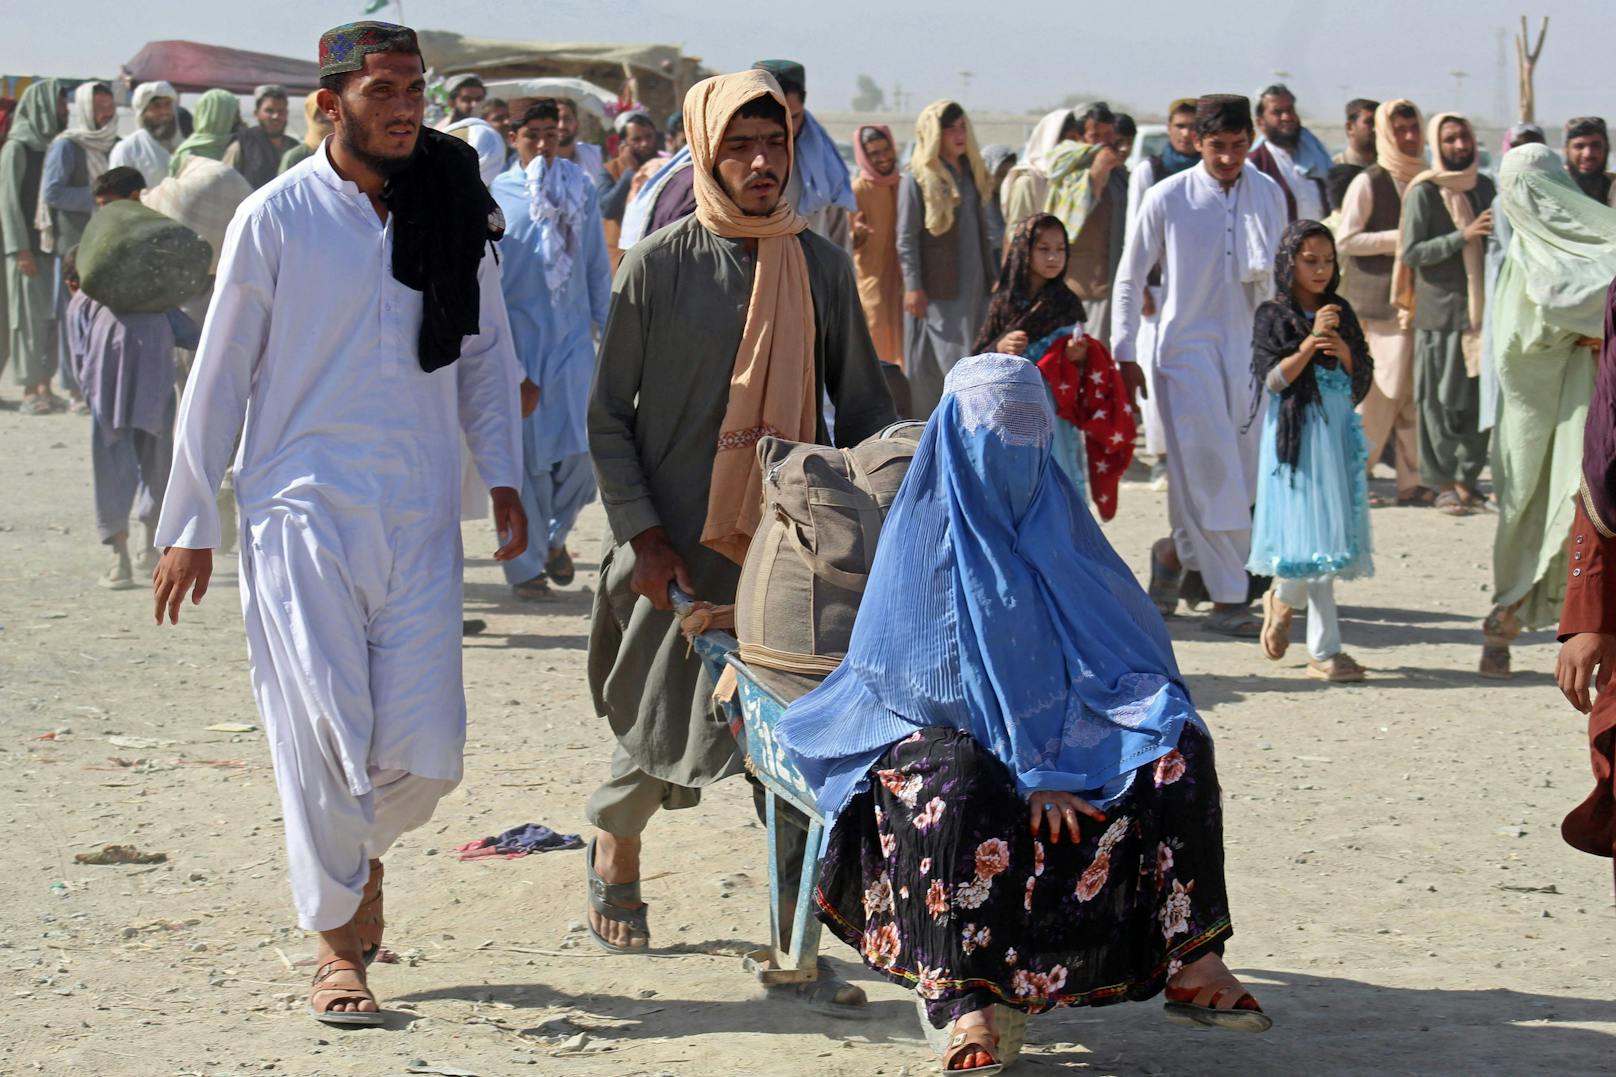 Österreich solle dabei "zumindest einigen besonders gefährdeten Menschen aus Afghanistan in Österreich Schutz und Zuflucht zu gewähren", berichtet "Kathpress".